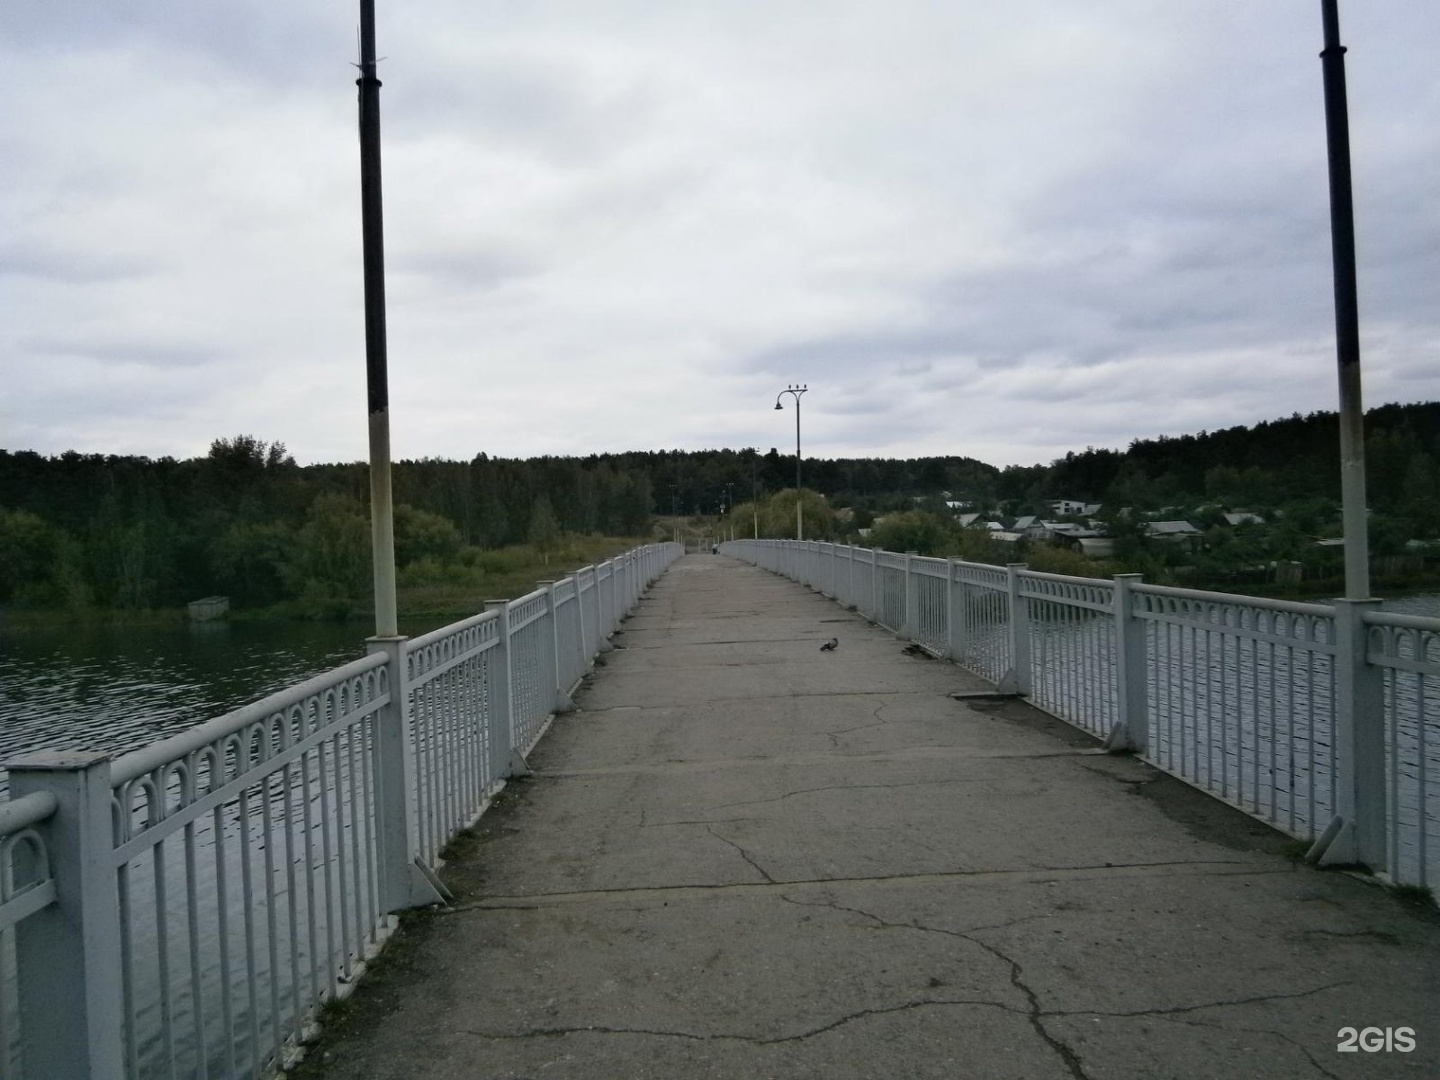 мост уральск